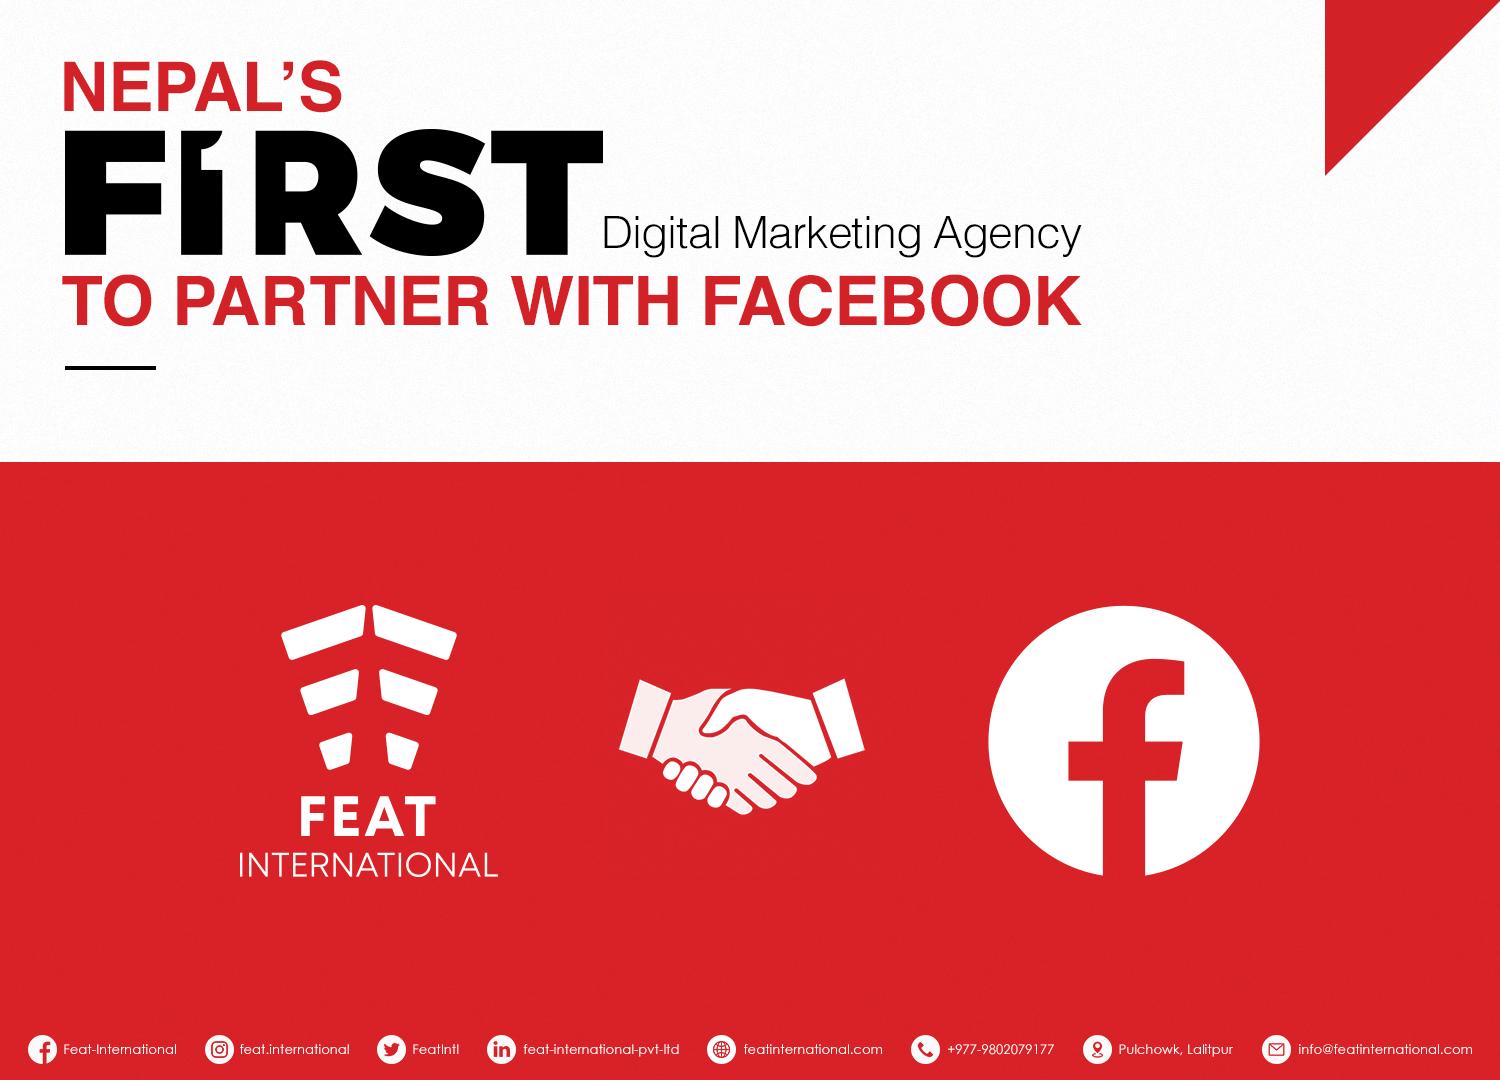 फिट इन्टरनेसनल फेसबुकसँग सम्झौता गर्ने नेपालको पहिलो डिजिटल मार्केटिङ एजेन्सी